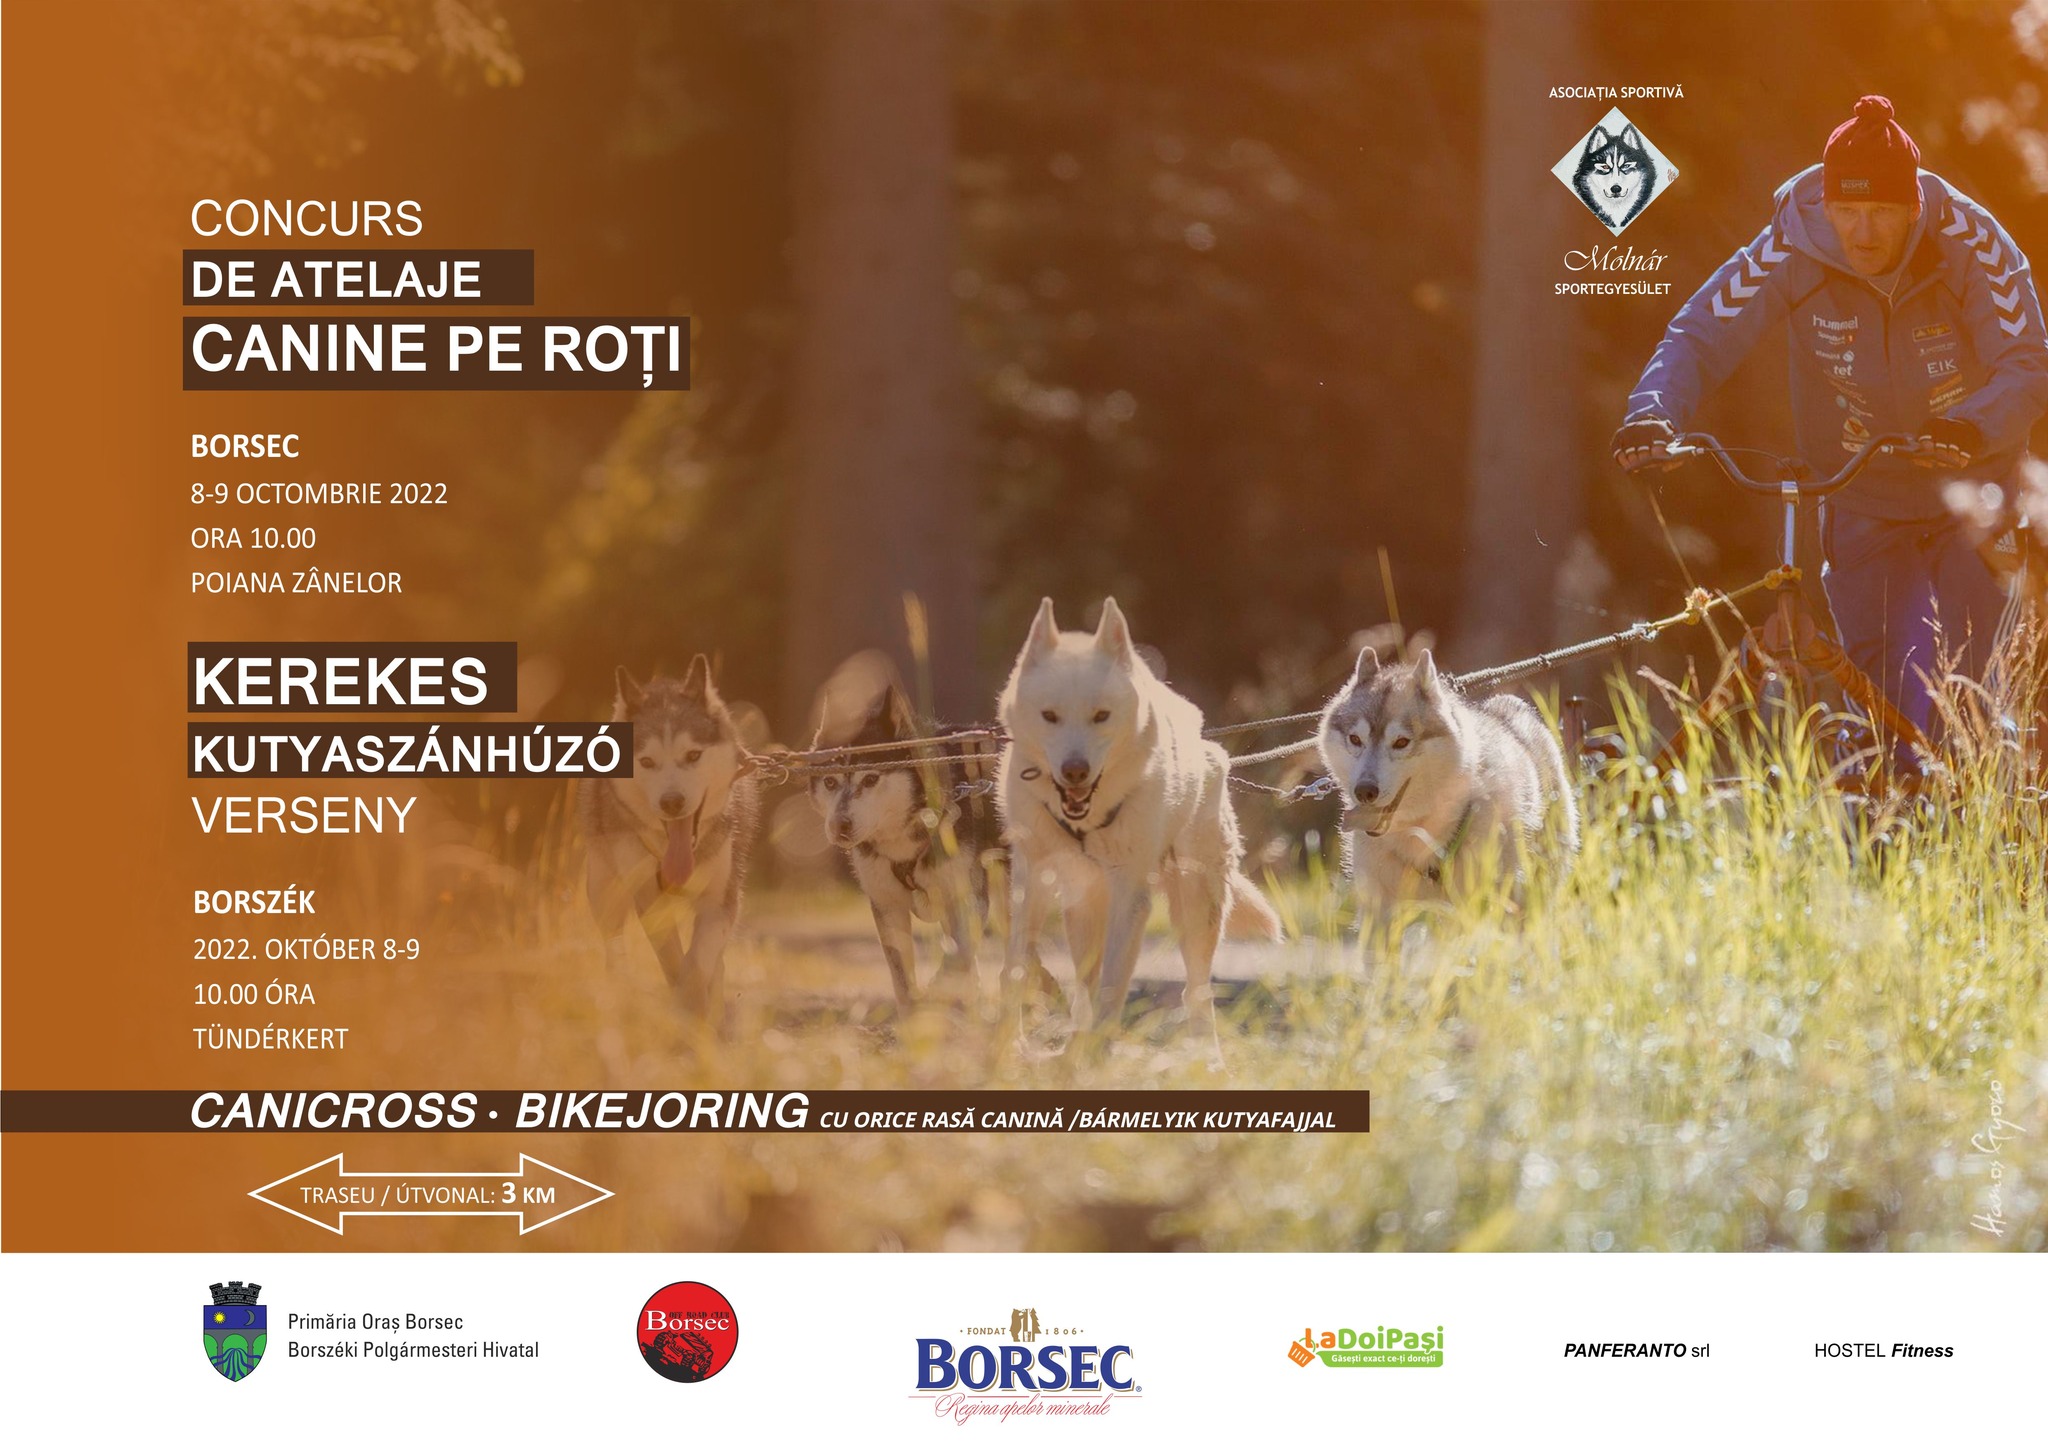 Concurs de Atelaje Canine pe roți și Canicross